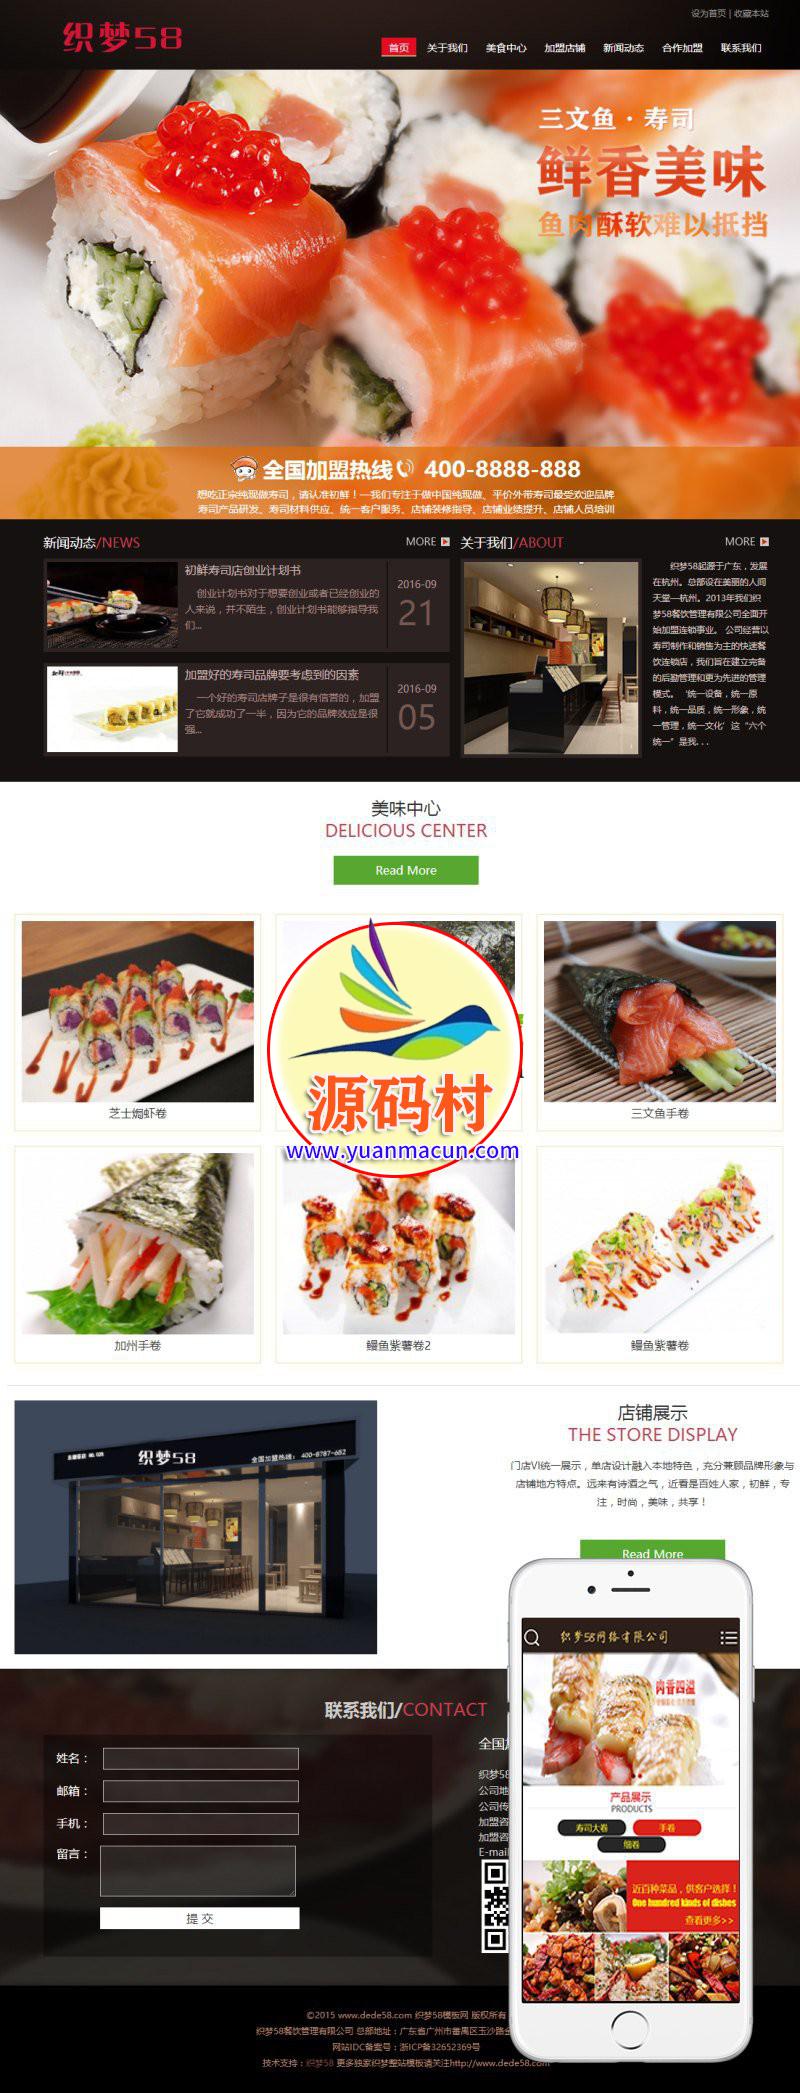  dedecms织梦 寿司料理餐饮管理企业网站源码 (带手机端) 可用于餐饮加盟等网站